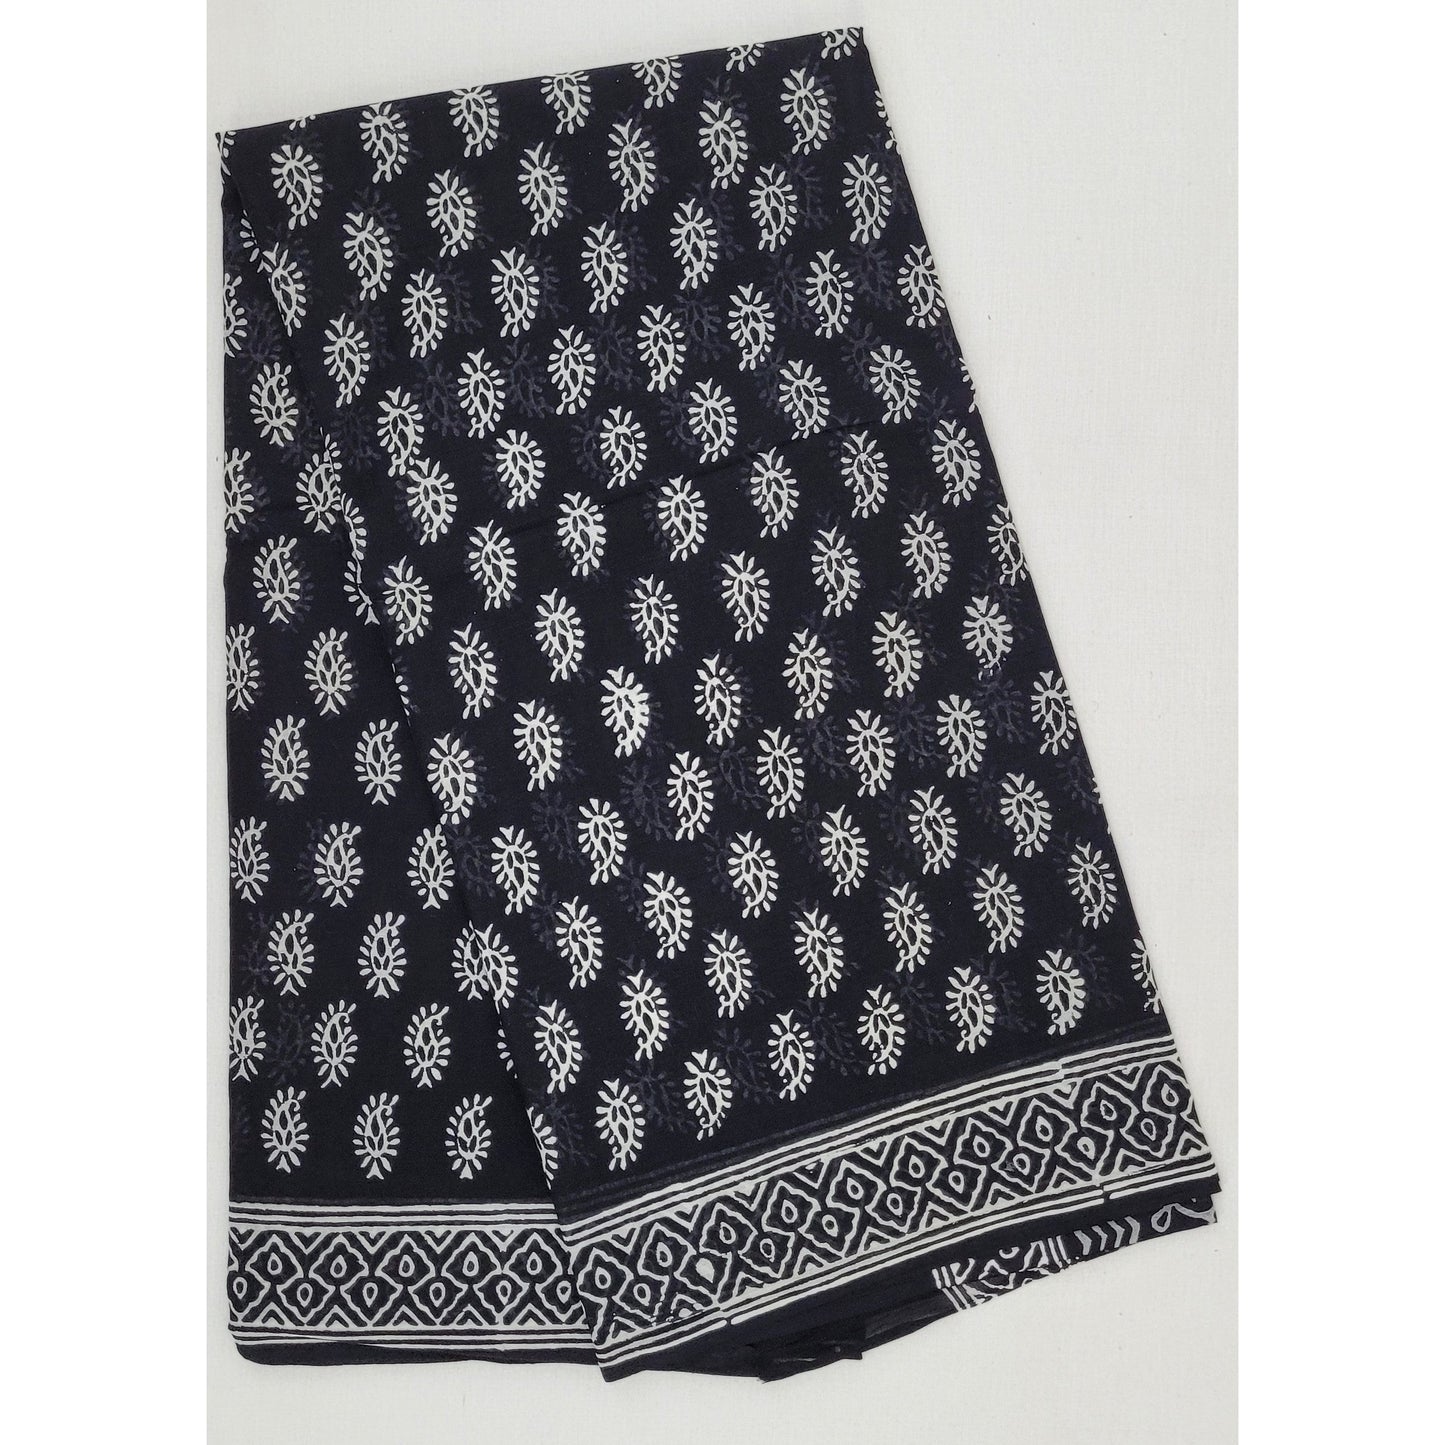 Hand Block Printed Bagru Black color mul mul cotton saree with printed blouse - Vinshika